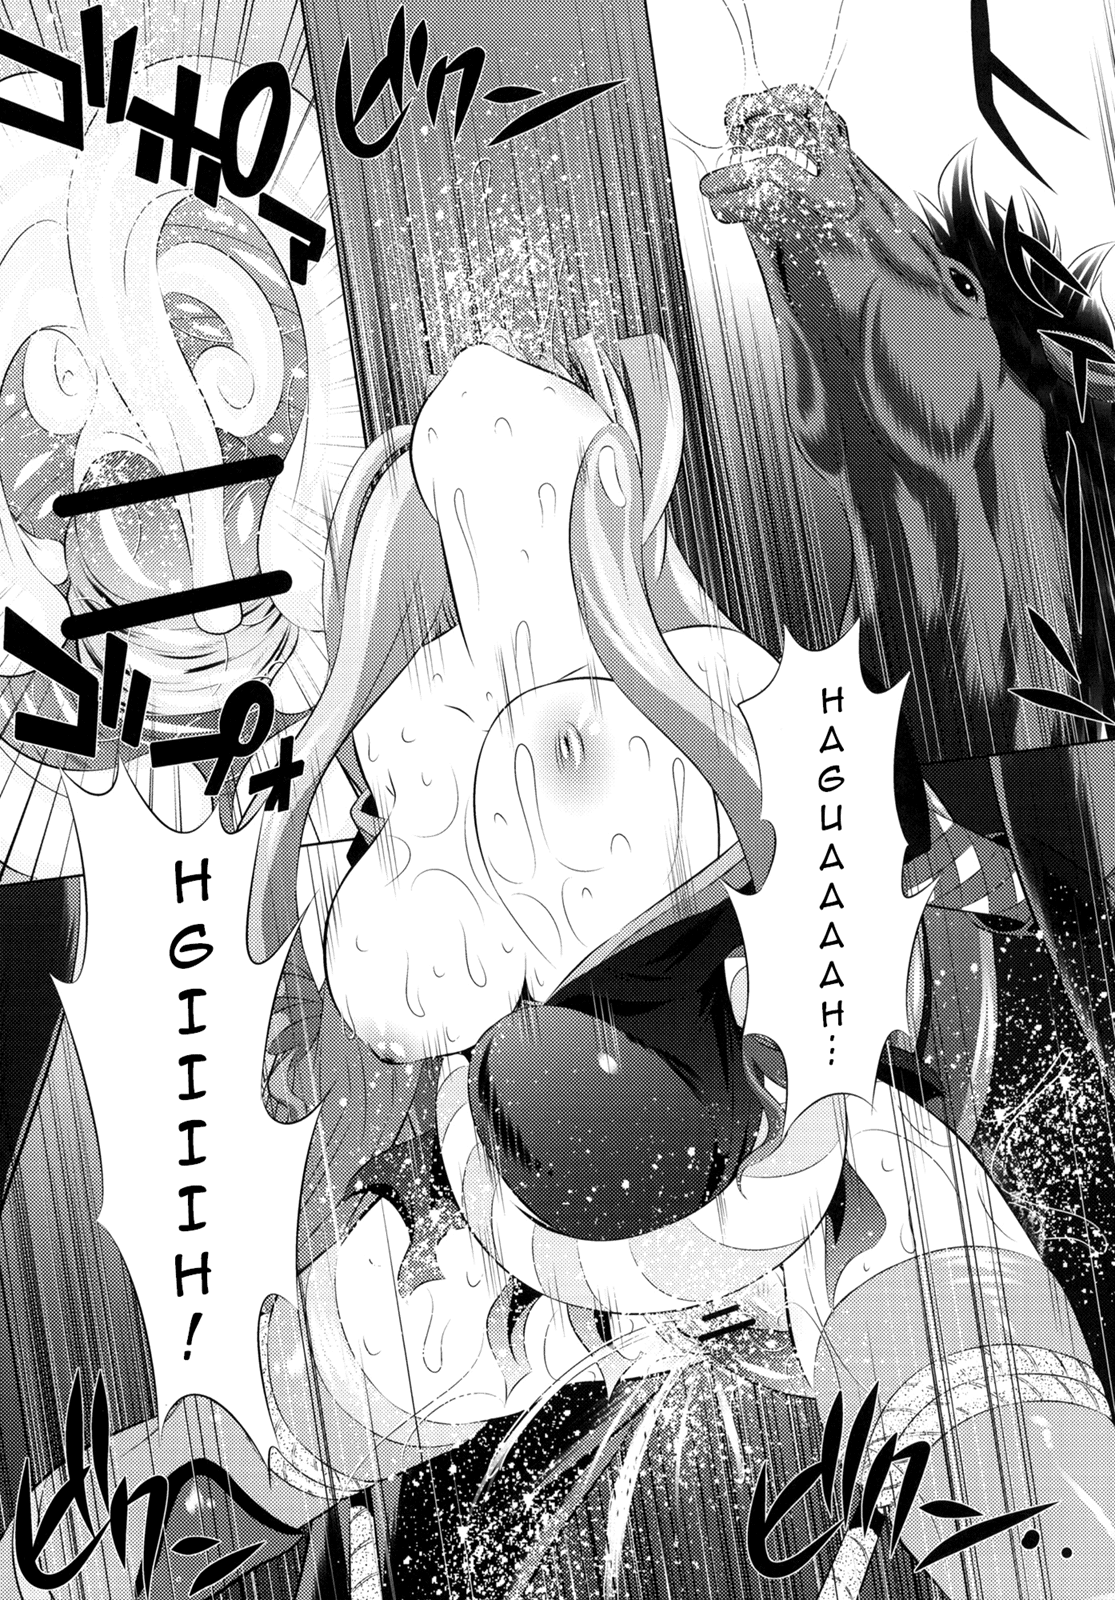 Togame vs Horse hentai manga picture 21